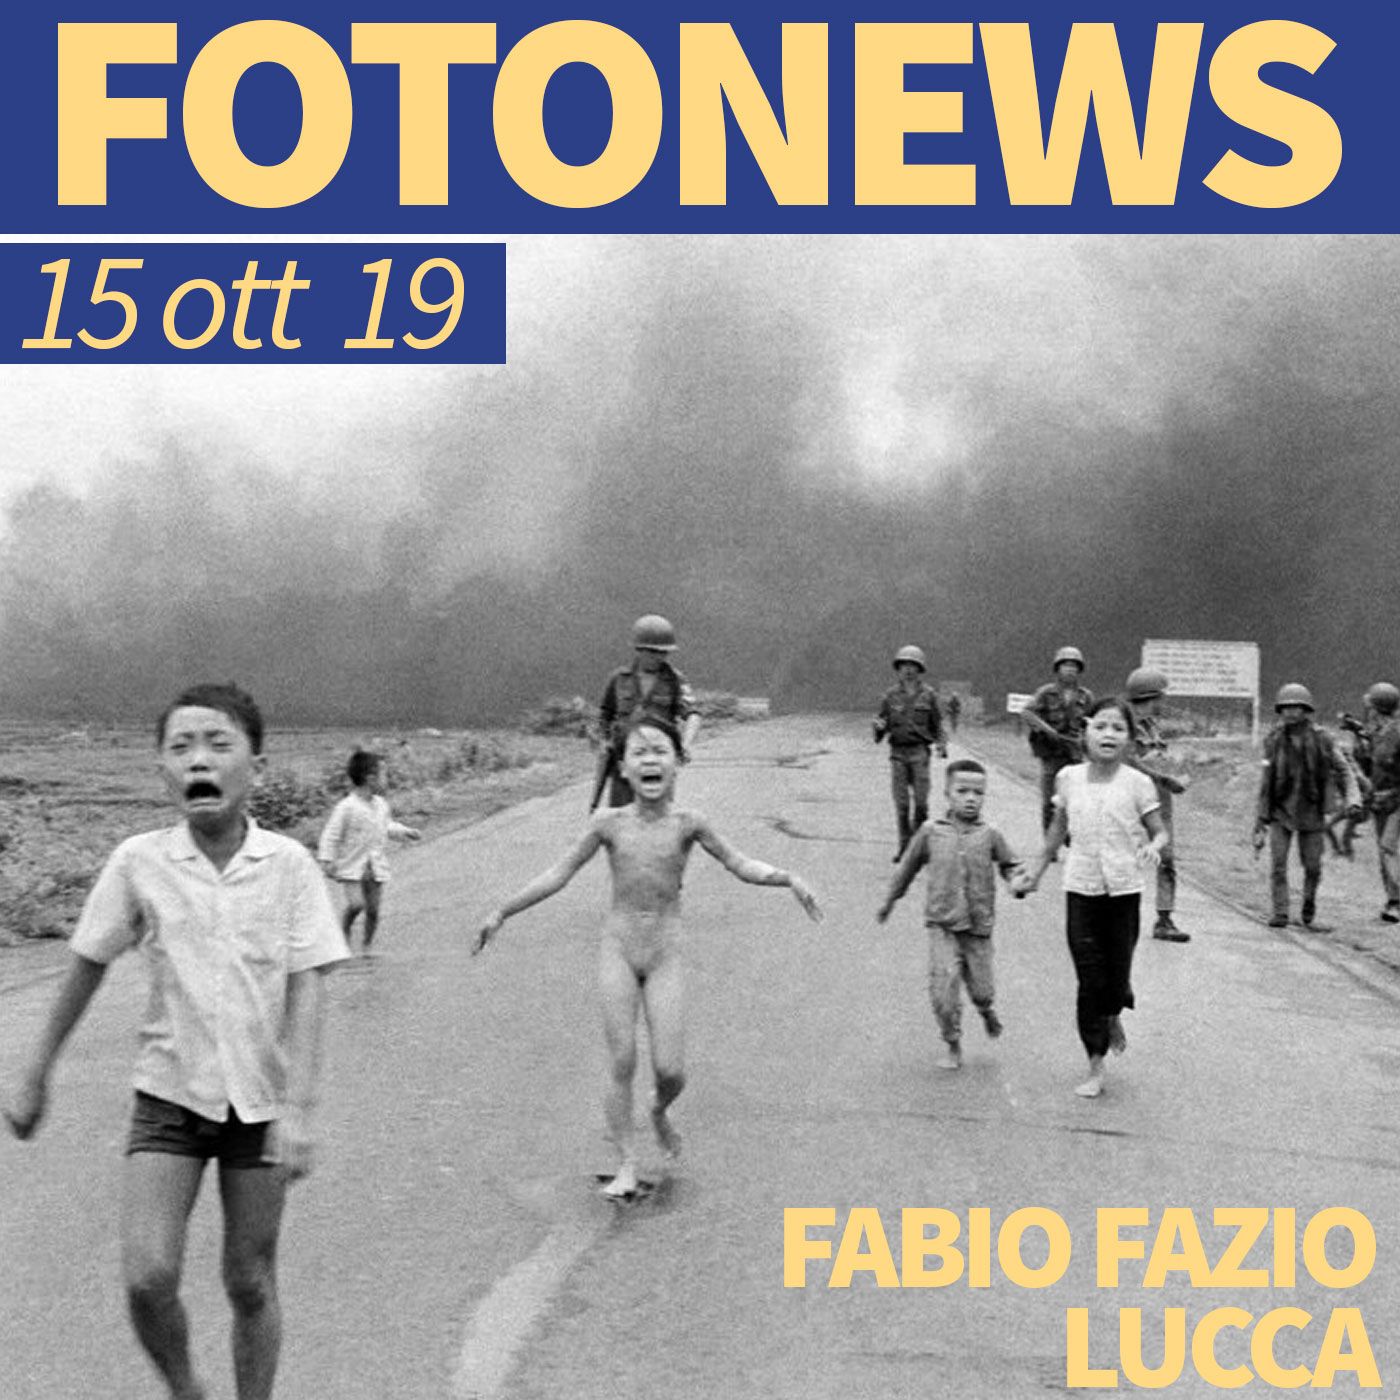 Fotonews #04 del 15 ottobre 2019: Fabio Fazio, Nick Ut, Vincent Delbrouck, Nicolas Asfouri, Rodi Said